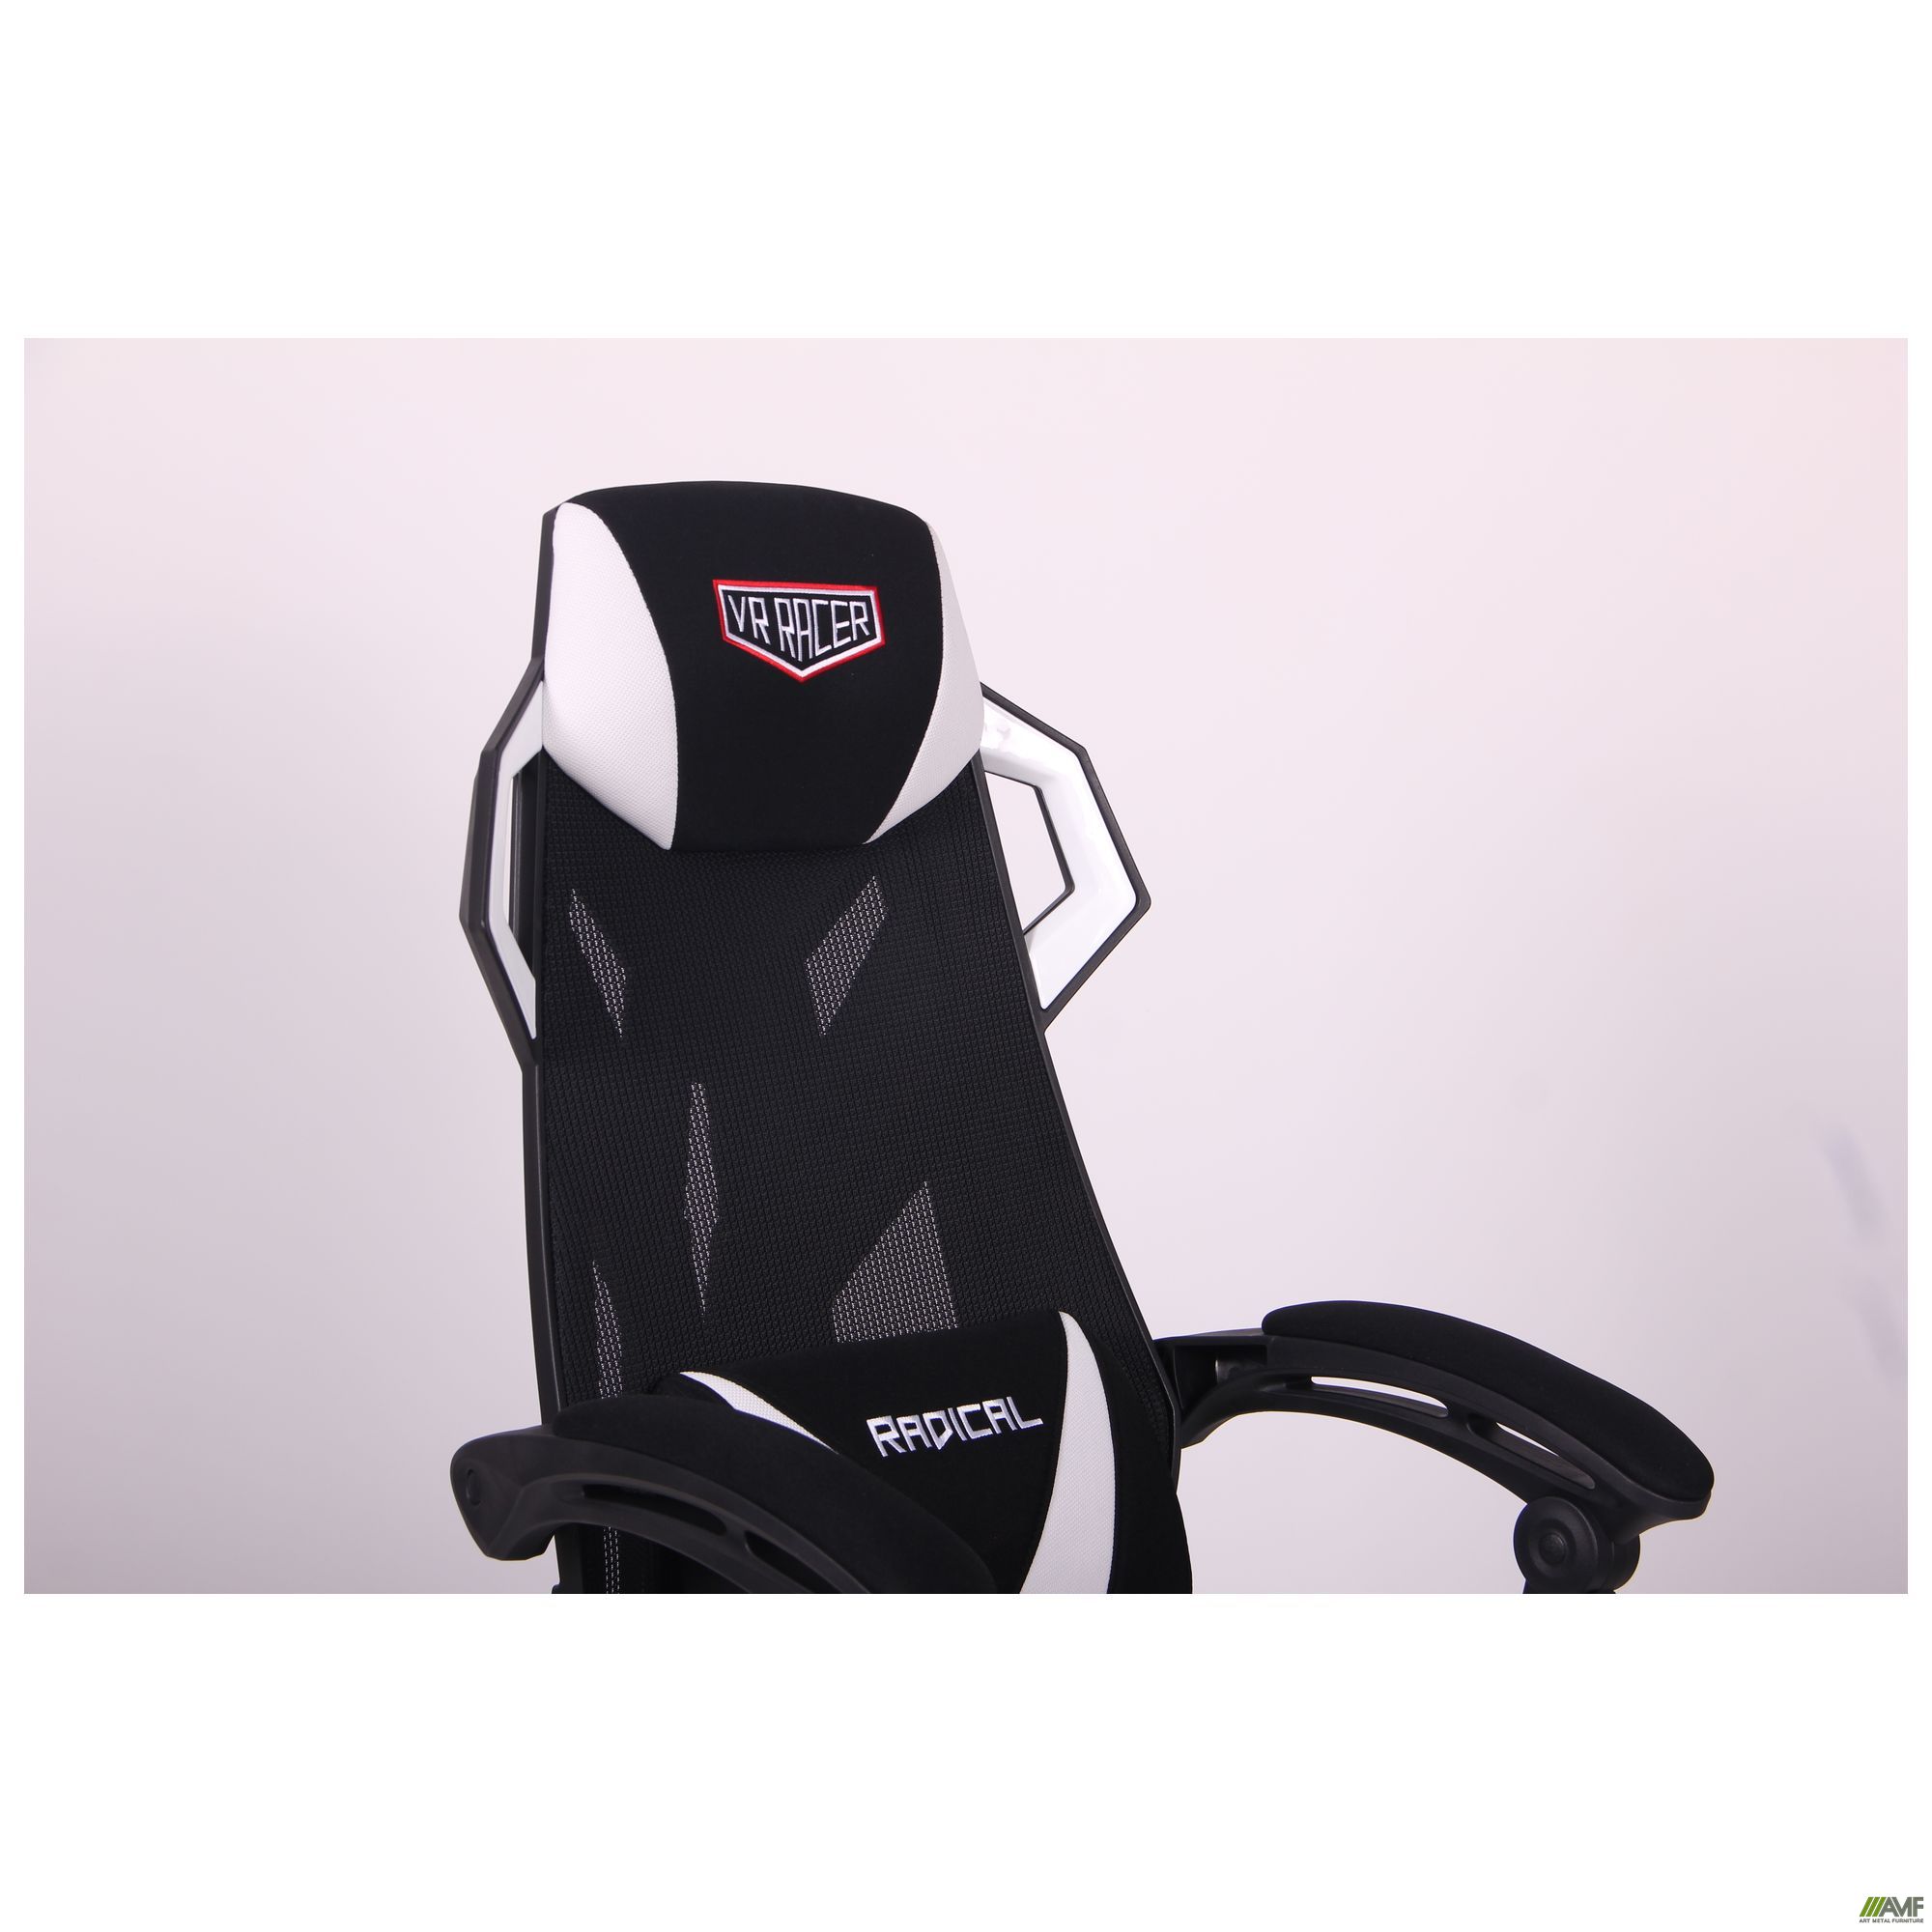 Фото 8 - Кресло VR Racer Radical Brooks черный/белый 